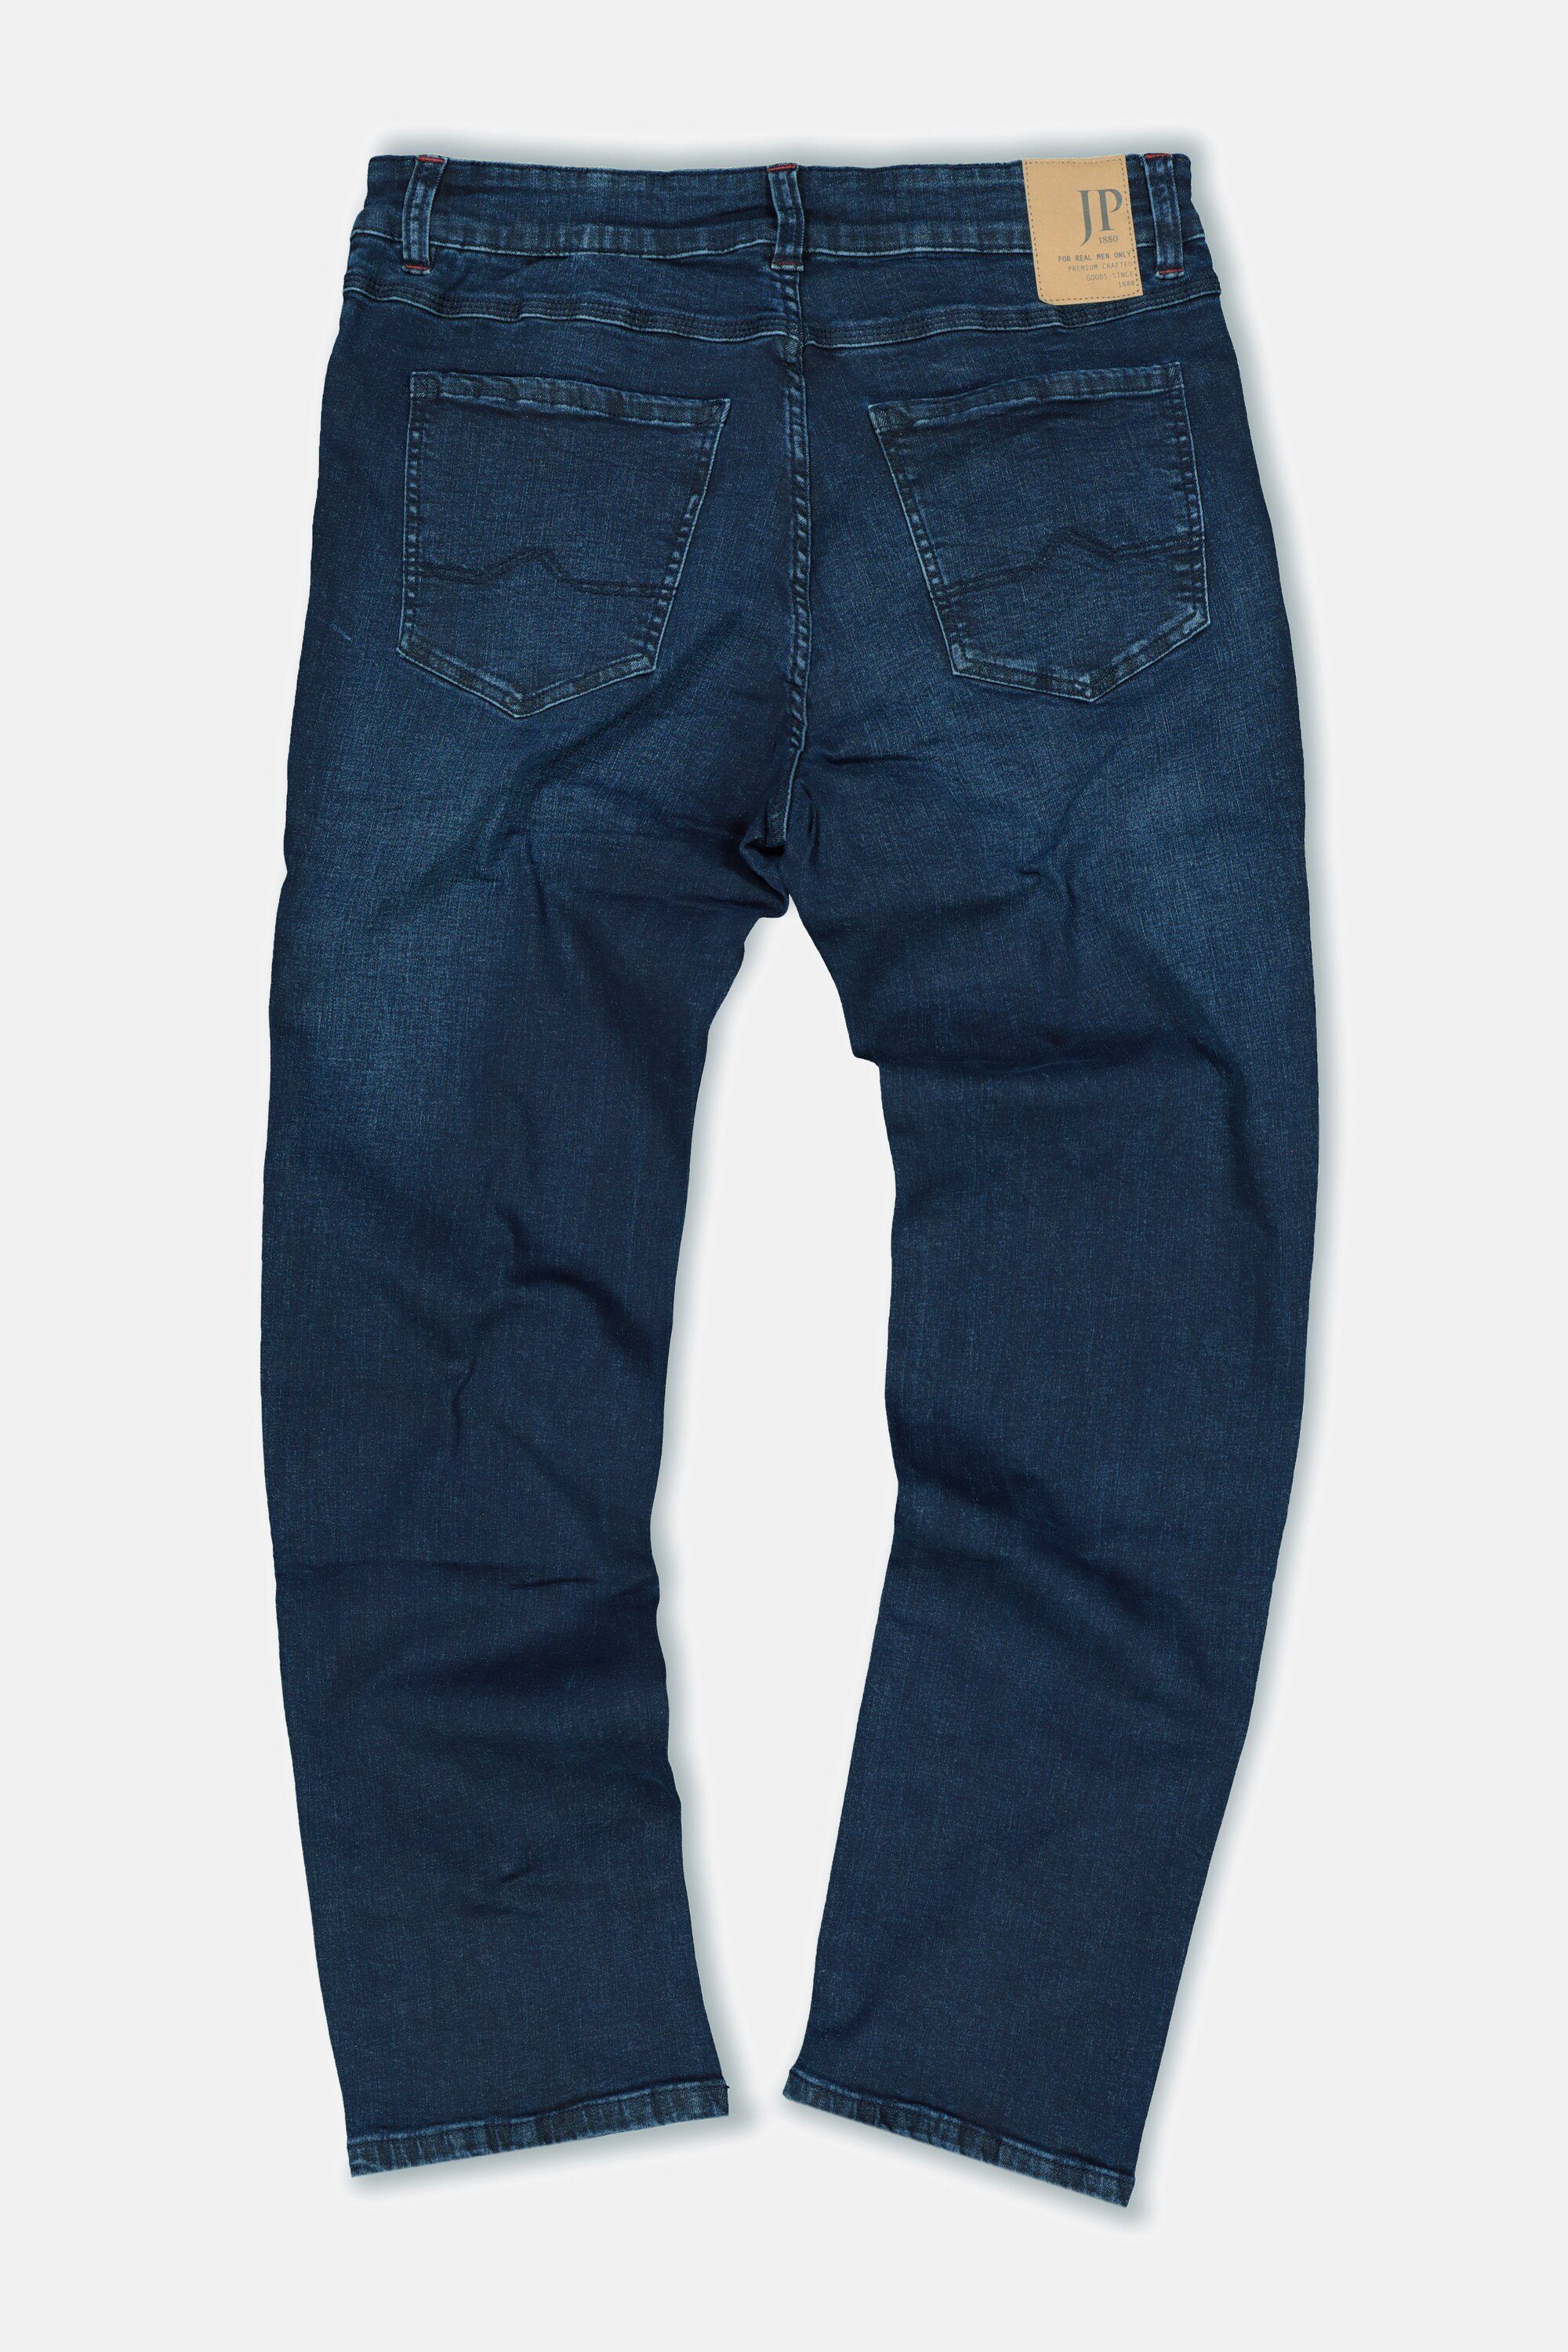 JP1880 denim Gr. bis Straight 70/35 dark FLEXNAMIC® 5-Pocket-Jeans Jeans Denim Fit blue